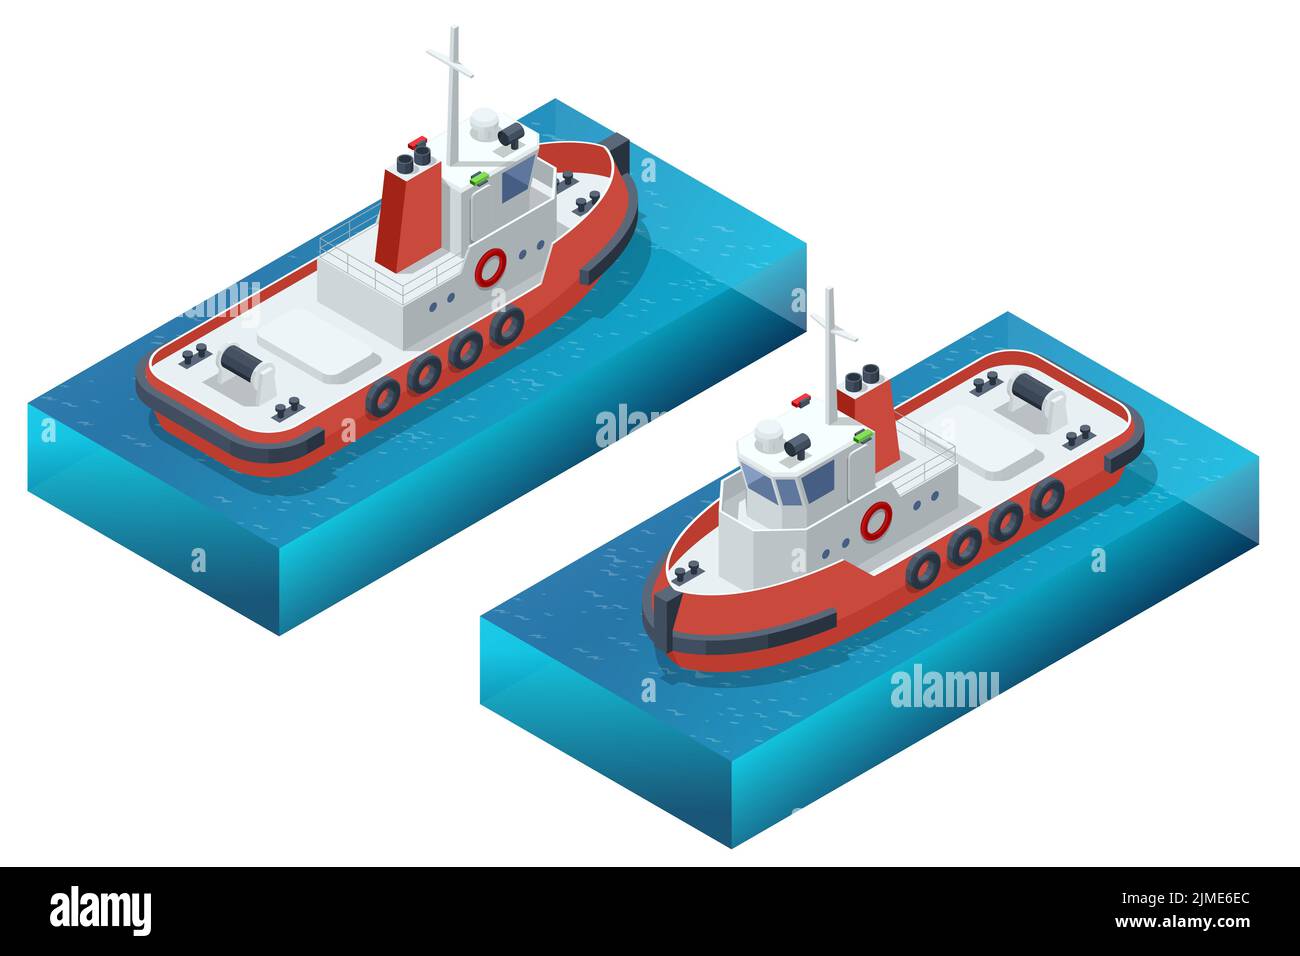 Tugboat isometrico. Un rimorchiatore o rimorchiatore è una nave marina che manovra altre navi spingendole o tirandole, a contatto diretto o con una linea di traino. Illustrazione Vettoriale